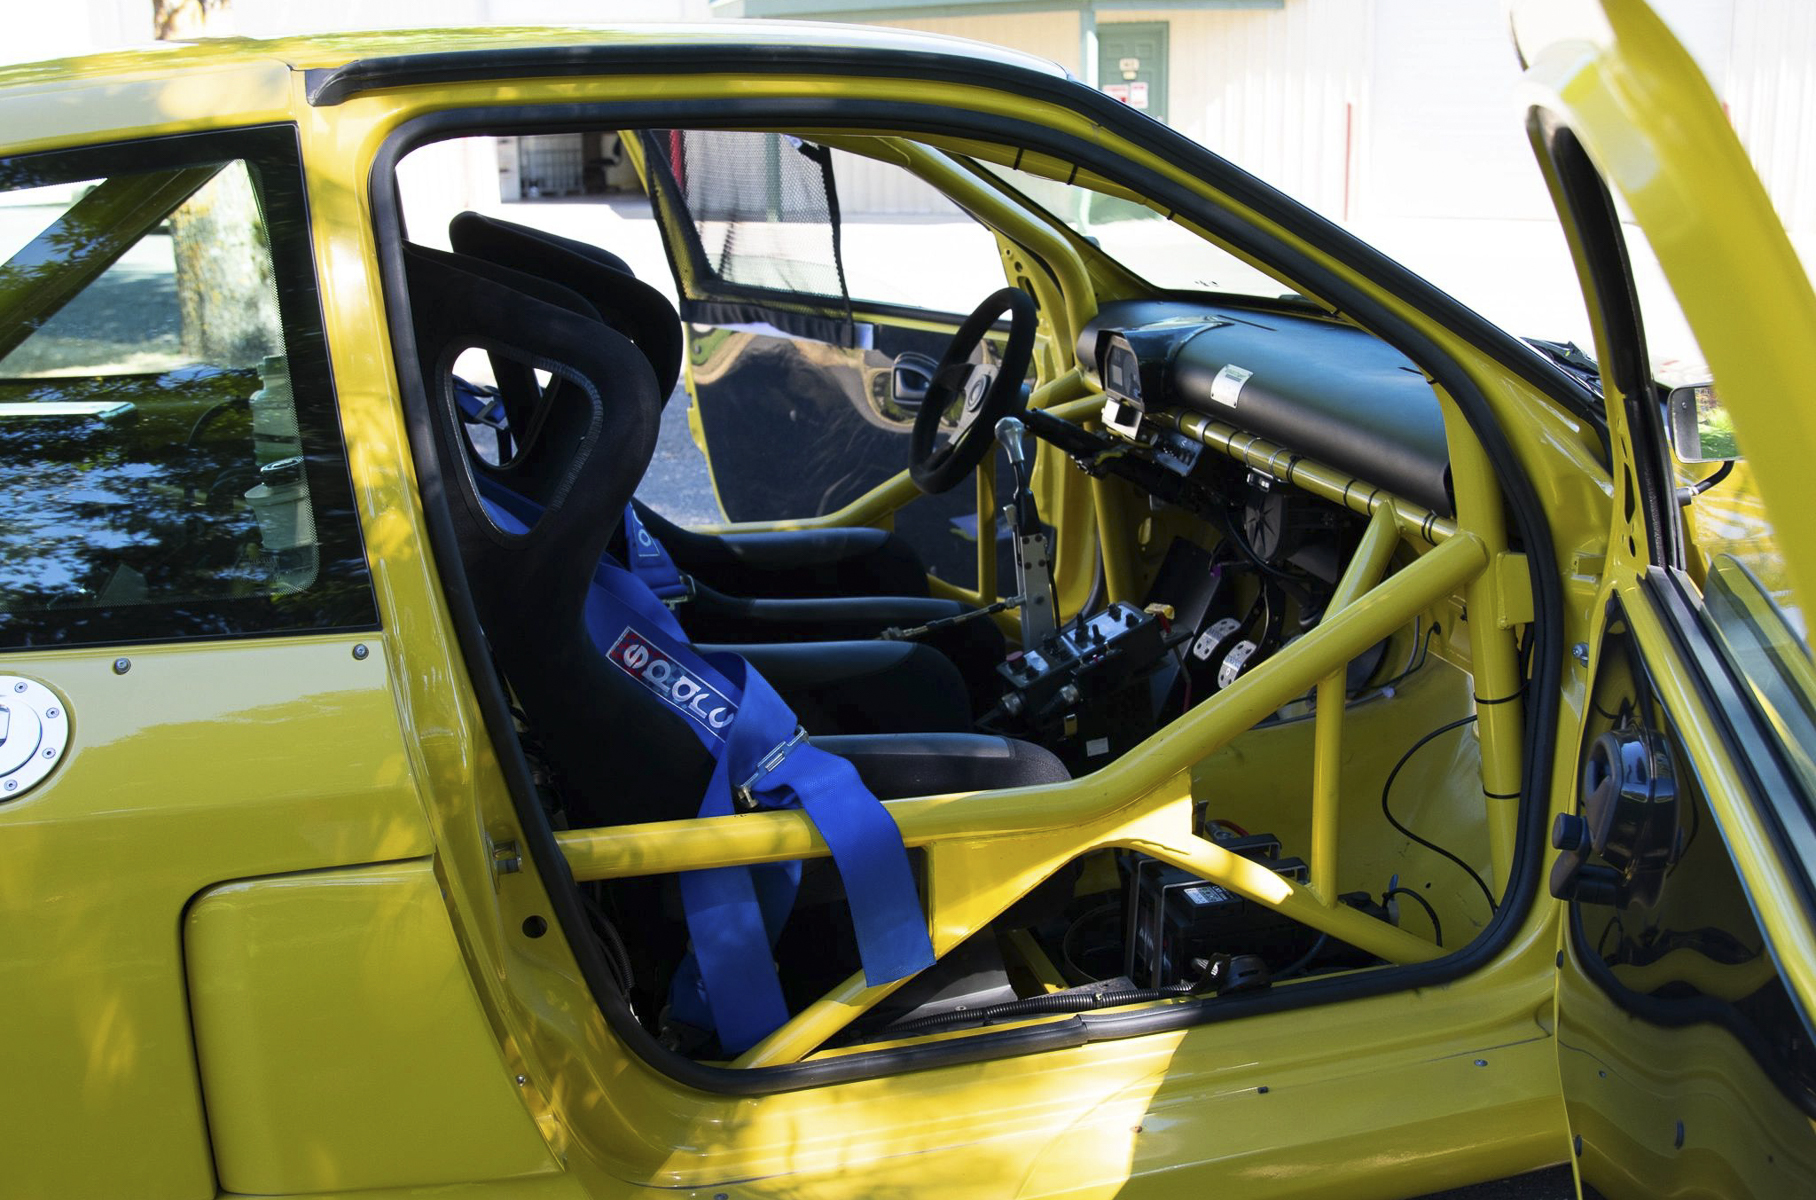 Редкий гоночный Renault Clio V6 ушел с молотка по цене нового Lexus ES